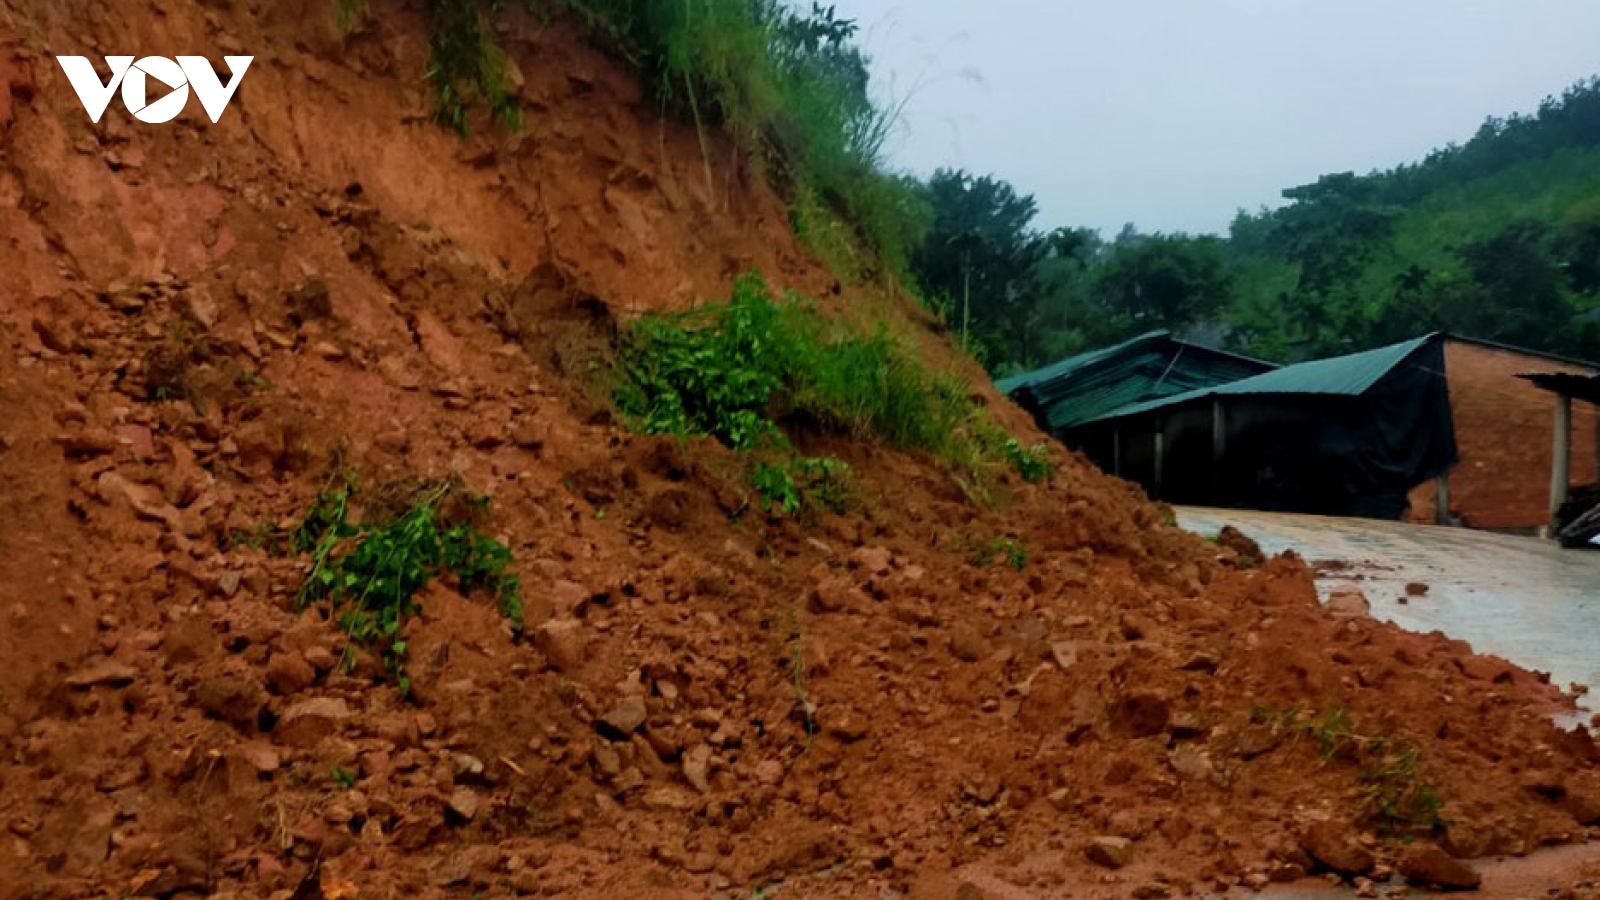 Mưa lớn ở Quảng Ngãi gây ngập, sạt lở chia cắt cục bộ nhiều tuyến đường